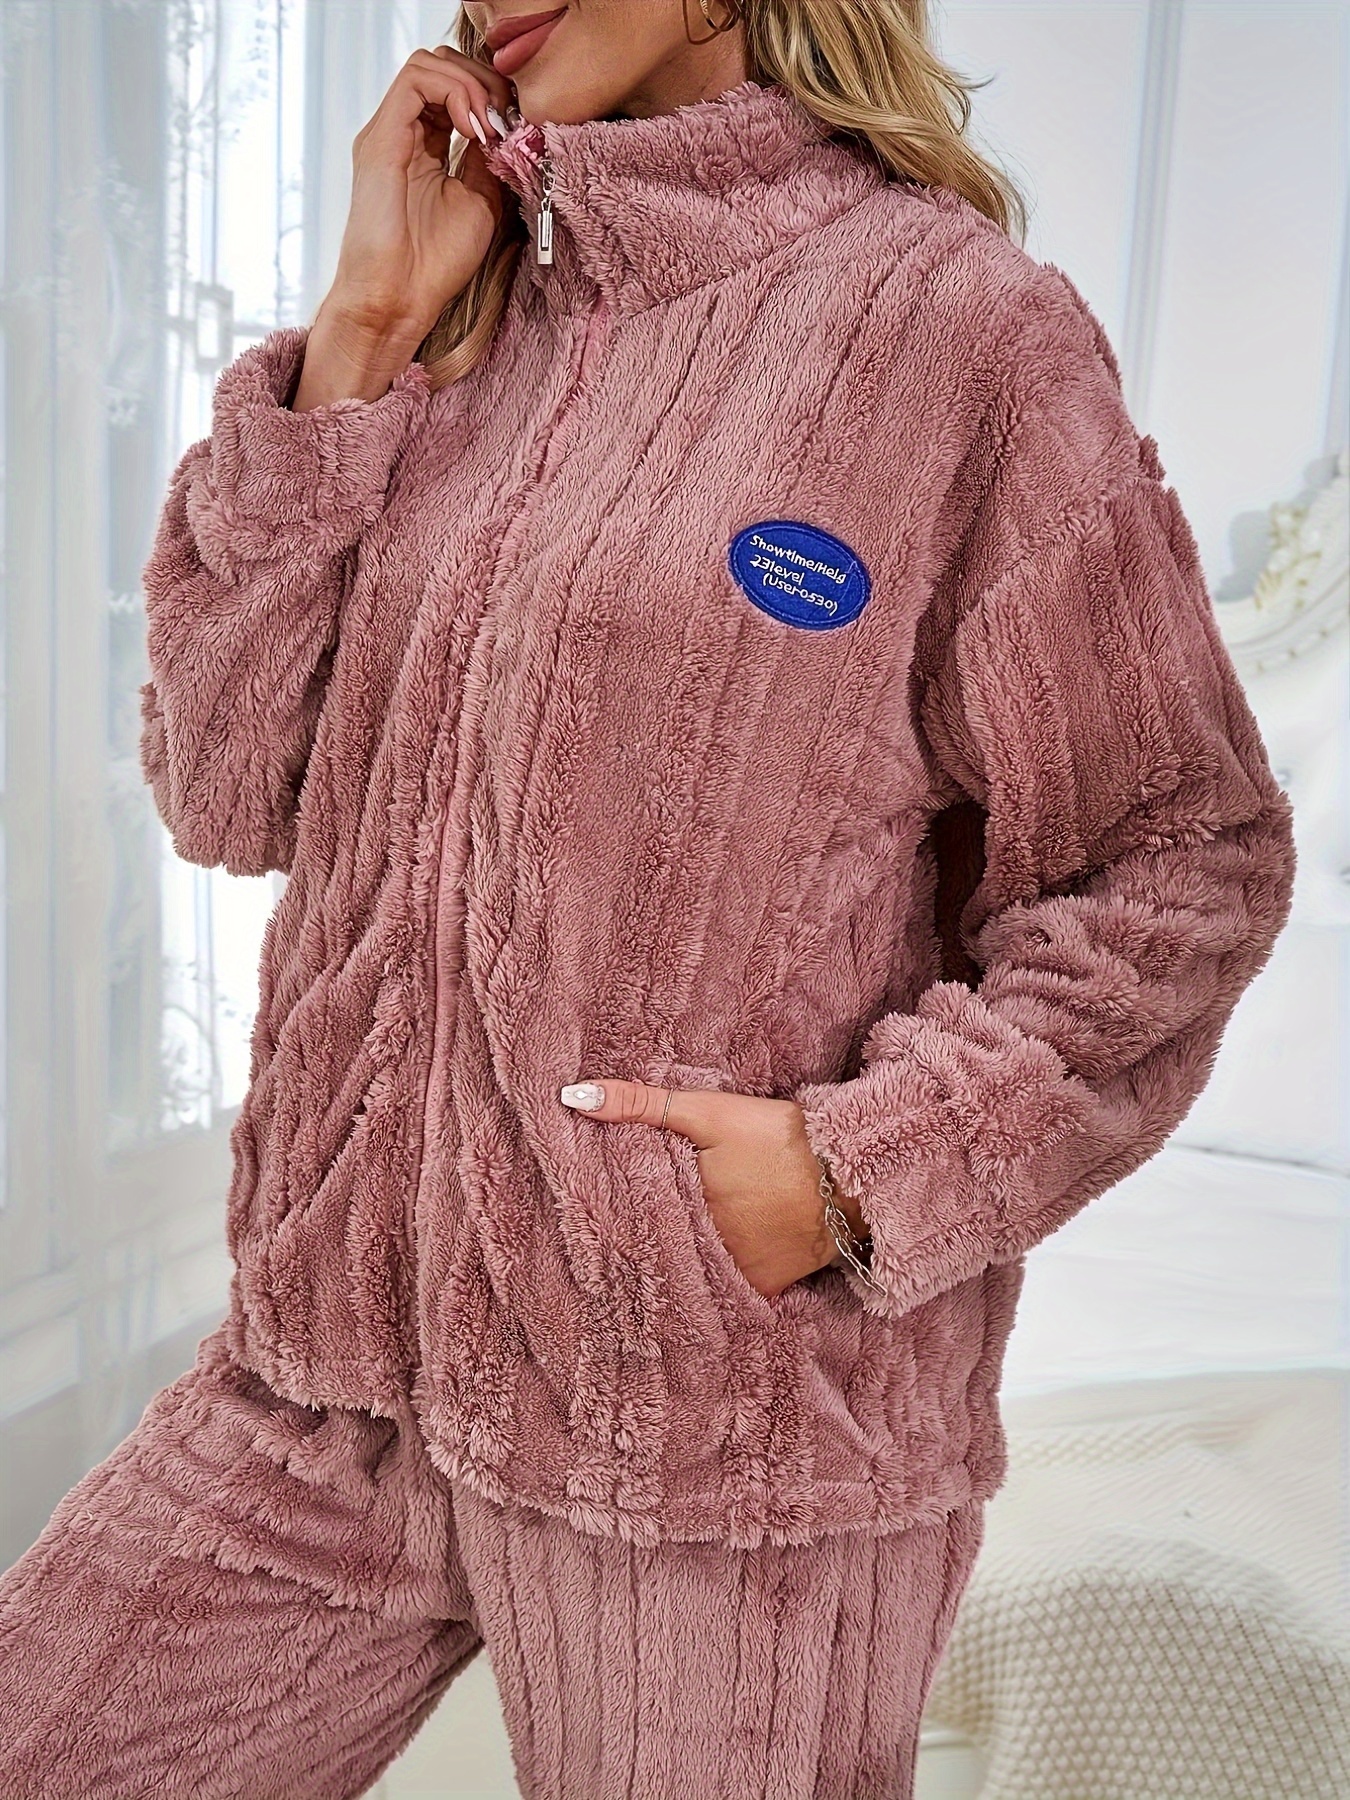 Women's Fuzzy Long Nightgown Zip up Fleece Nightdress Plush Full